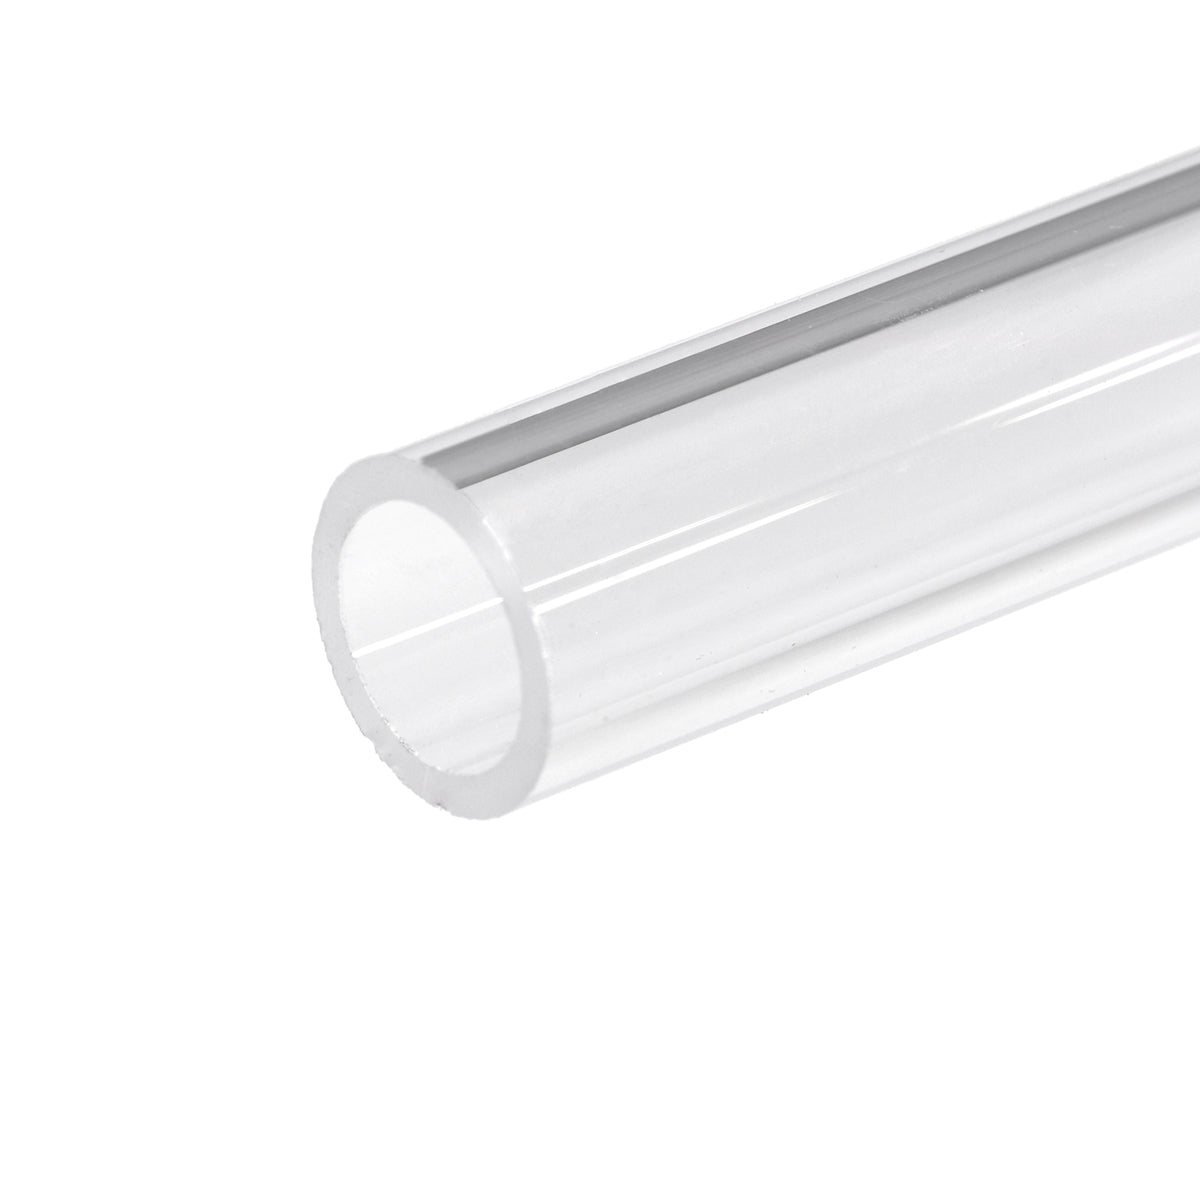 15-1113A quartz glass tube